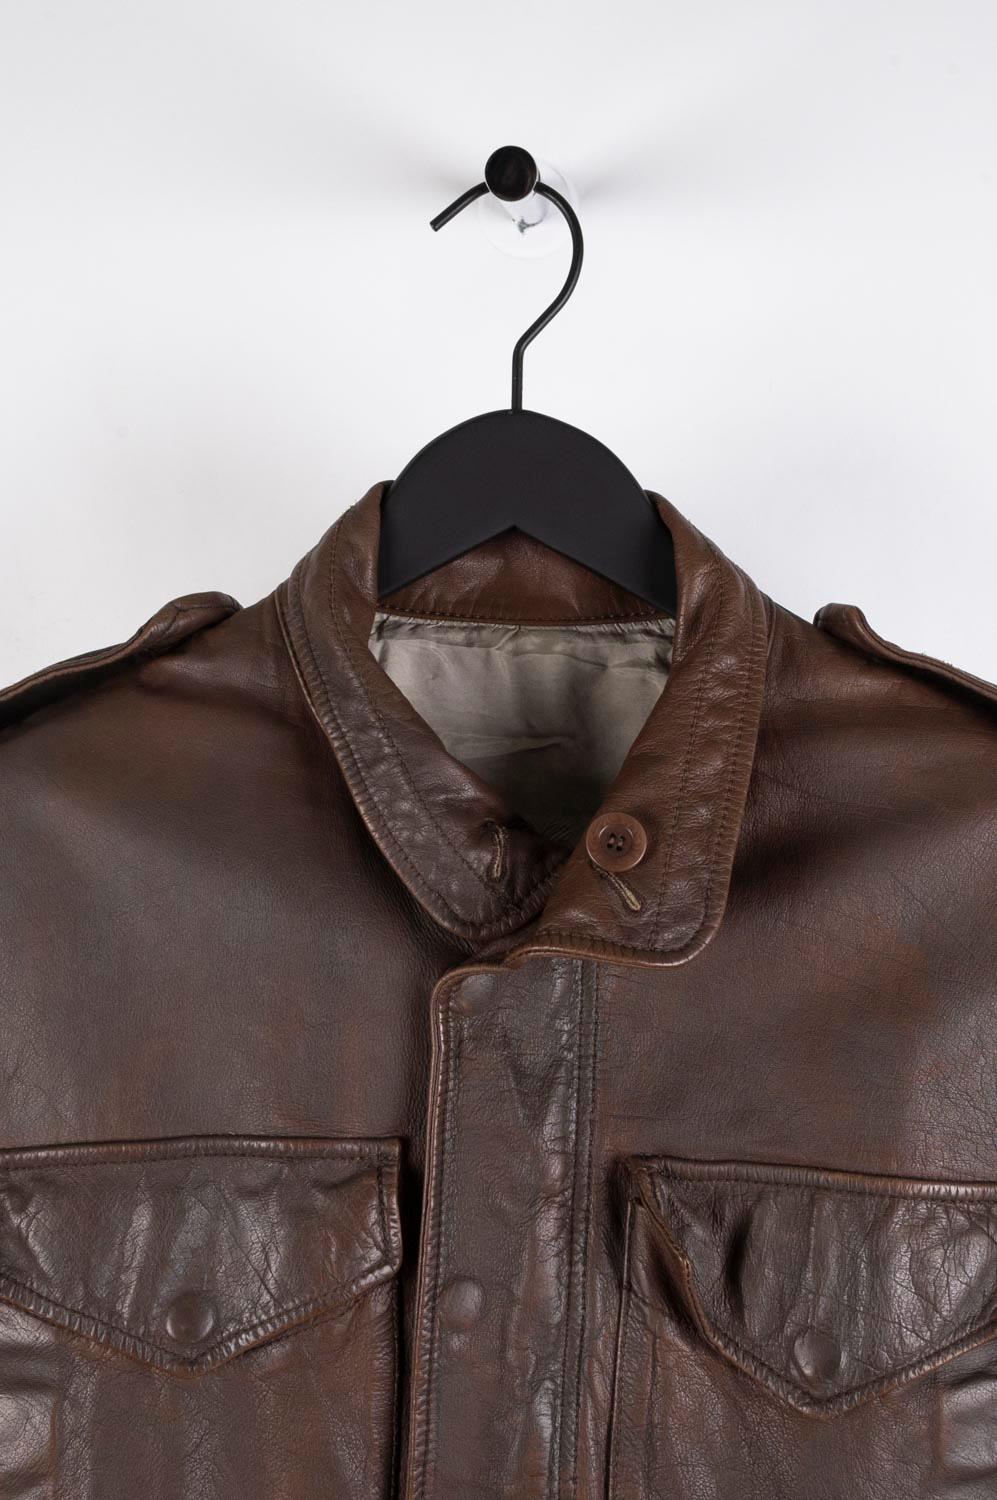 L'article mis en vente est 100% authentique Rick Owens Leather Men Jacket 
Couleur : marron
(La couleur réelle peut varier légèrement en raison de l'interprétation individuelle de l'écran de l'ordinateur).
Matière : 100% buffle
Taille de l'étiquette